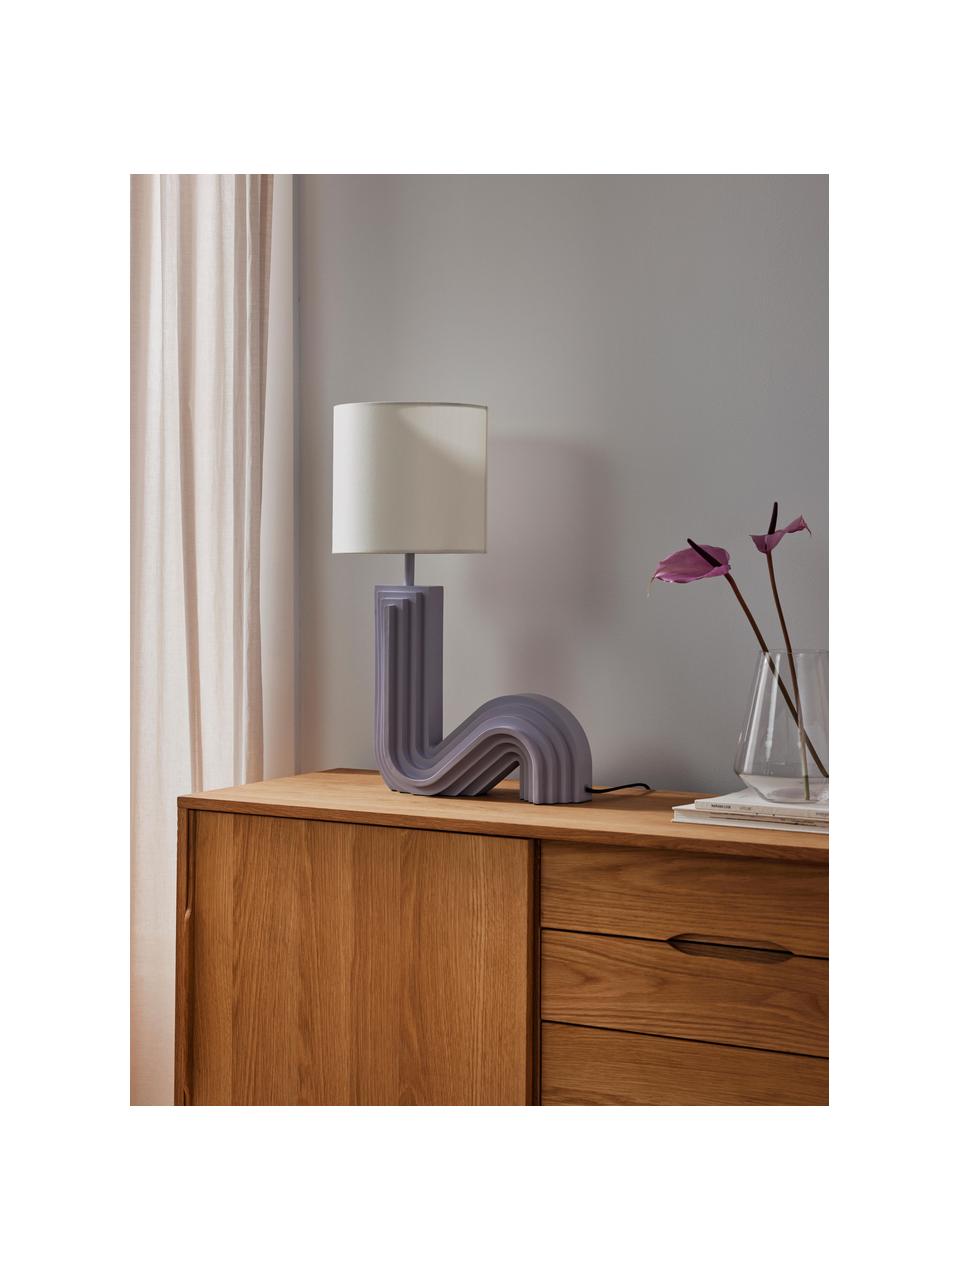 Design Tischlampe Luomo, Lampenschirm: Leinenstoff, Lampenfuß: Harz, lackiert, Off White, Lavendel, B 43 x H 61 cm